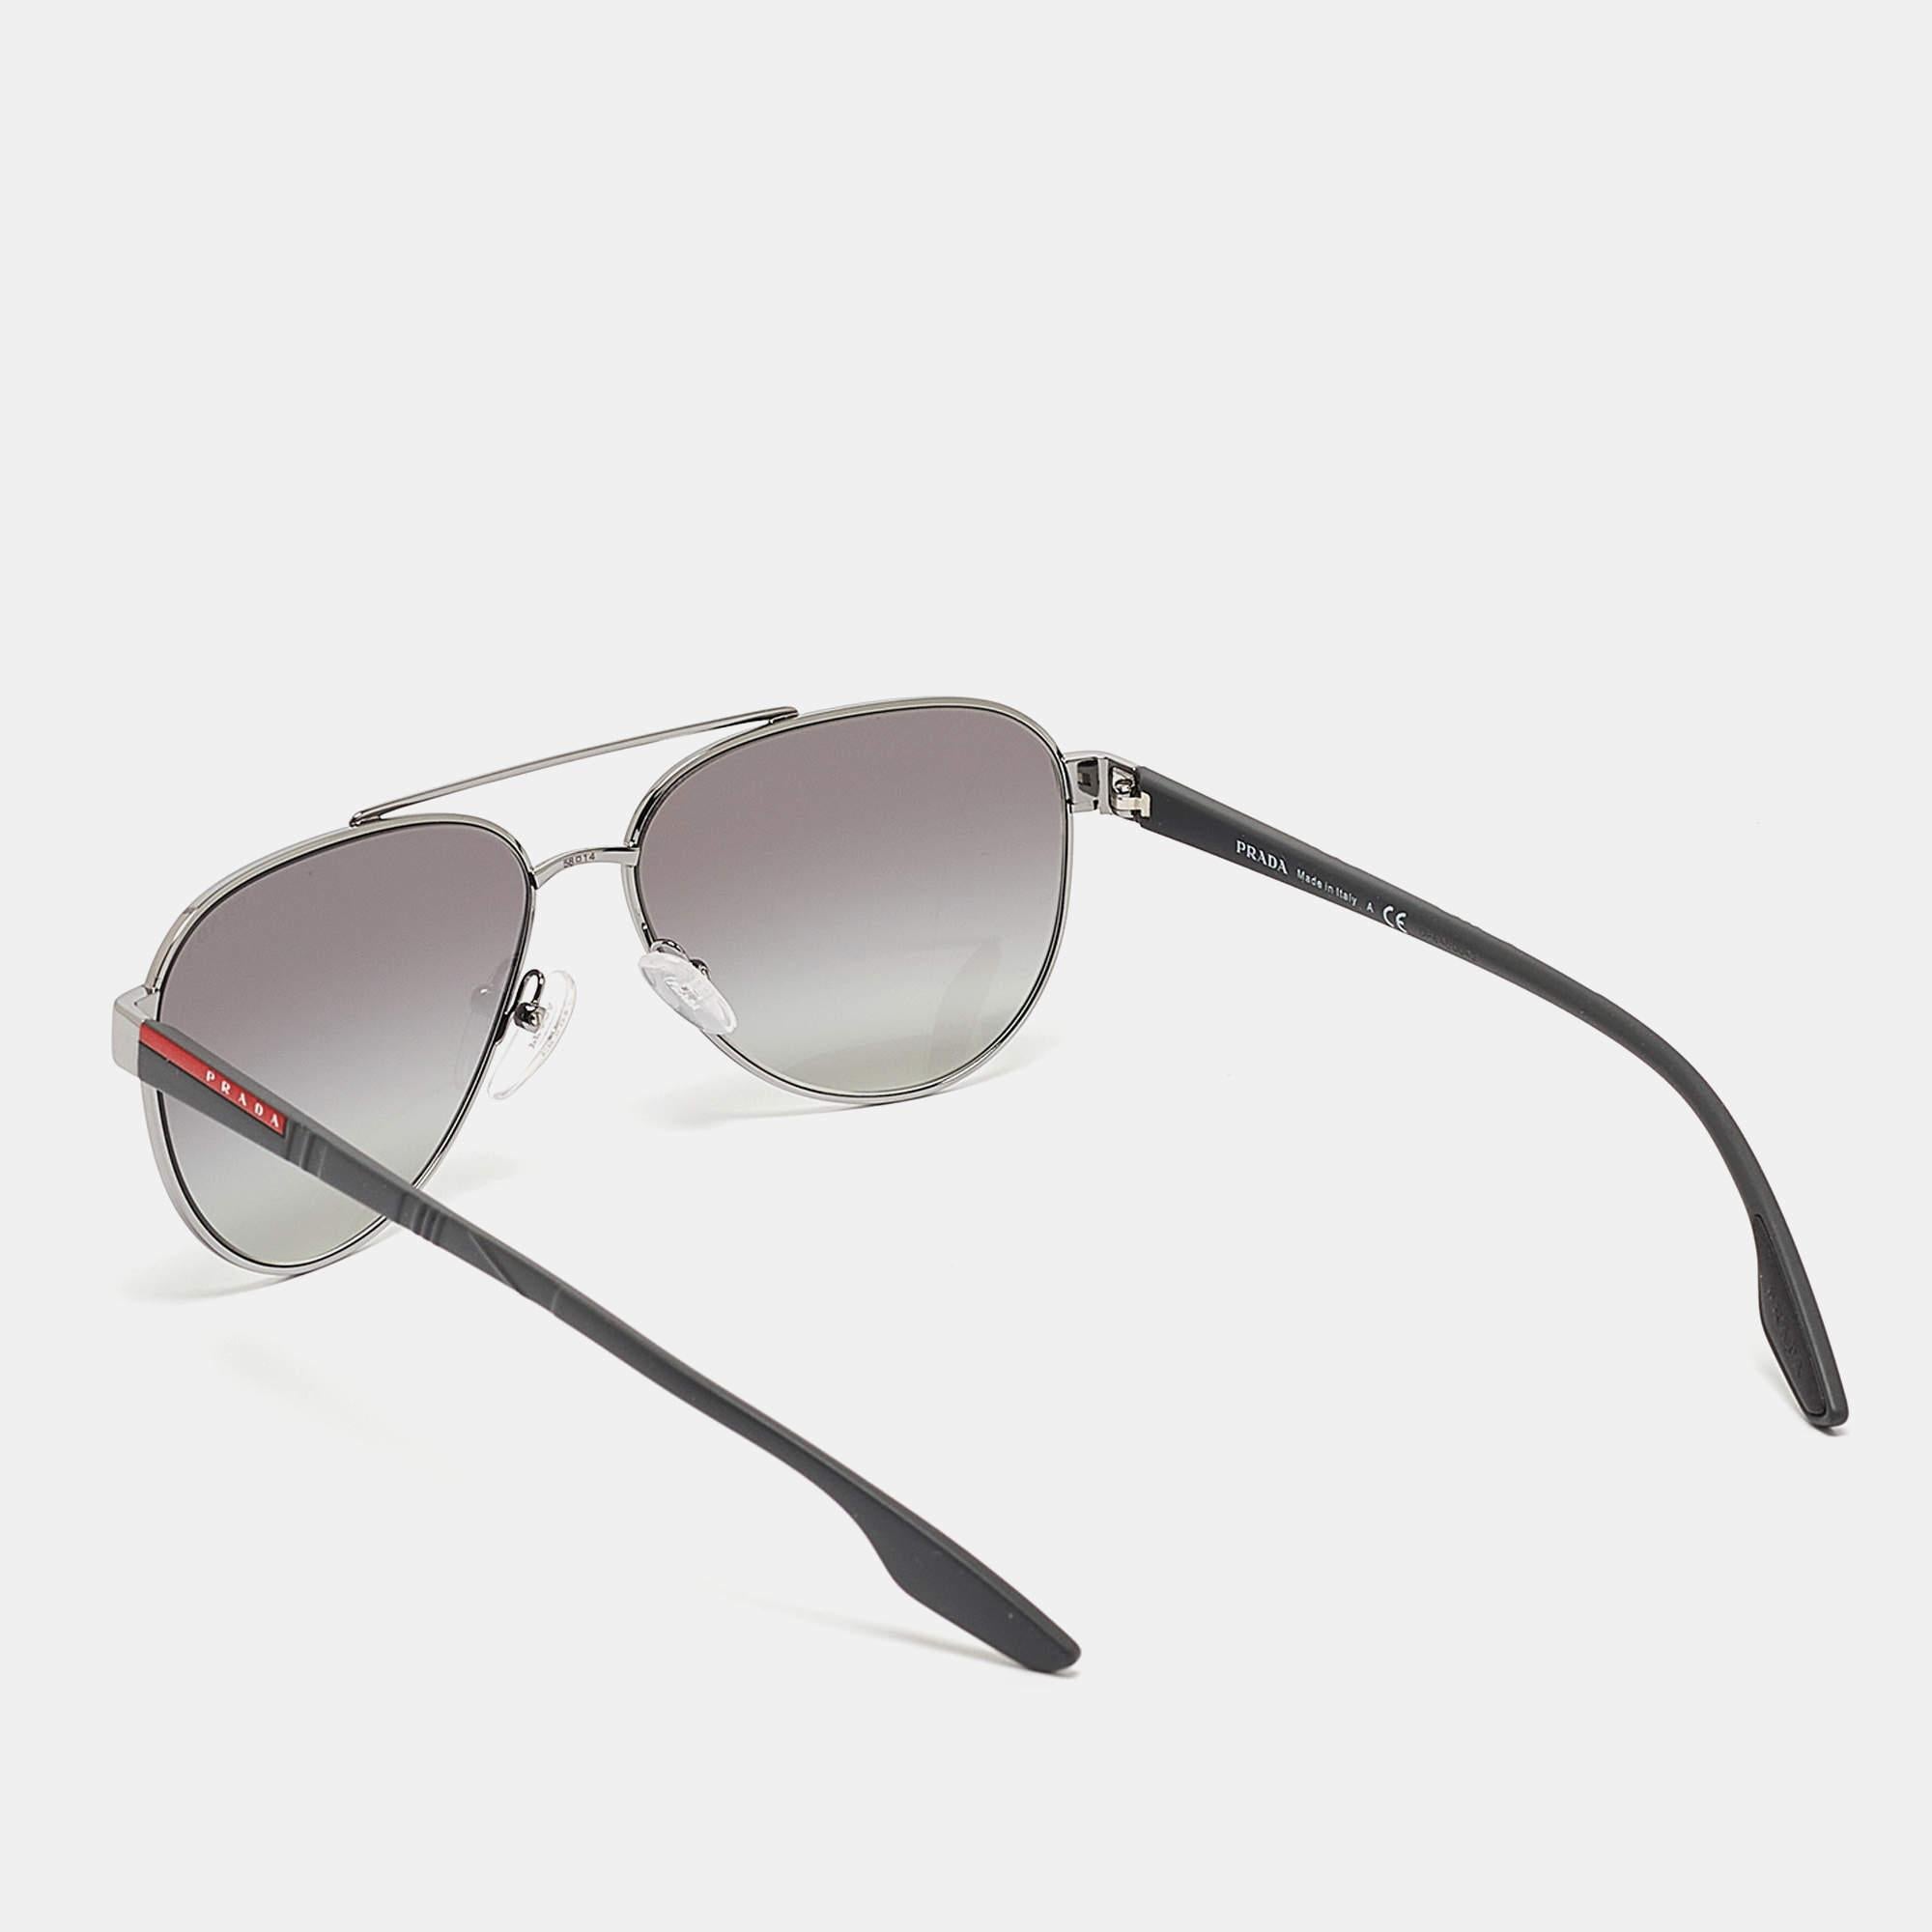 Mit dieser Sonnenbrille von Prada Sport lassen sich sonnige Tage stilvoll genießen. Die luxuriöse Sonnenbrille wurde mit viel Know-how entwickelt und verfügt über einen gut gestalteten Rahmen und hochwertige Gläser, die Ihre Augen